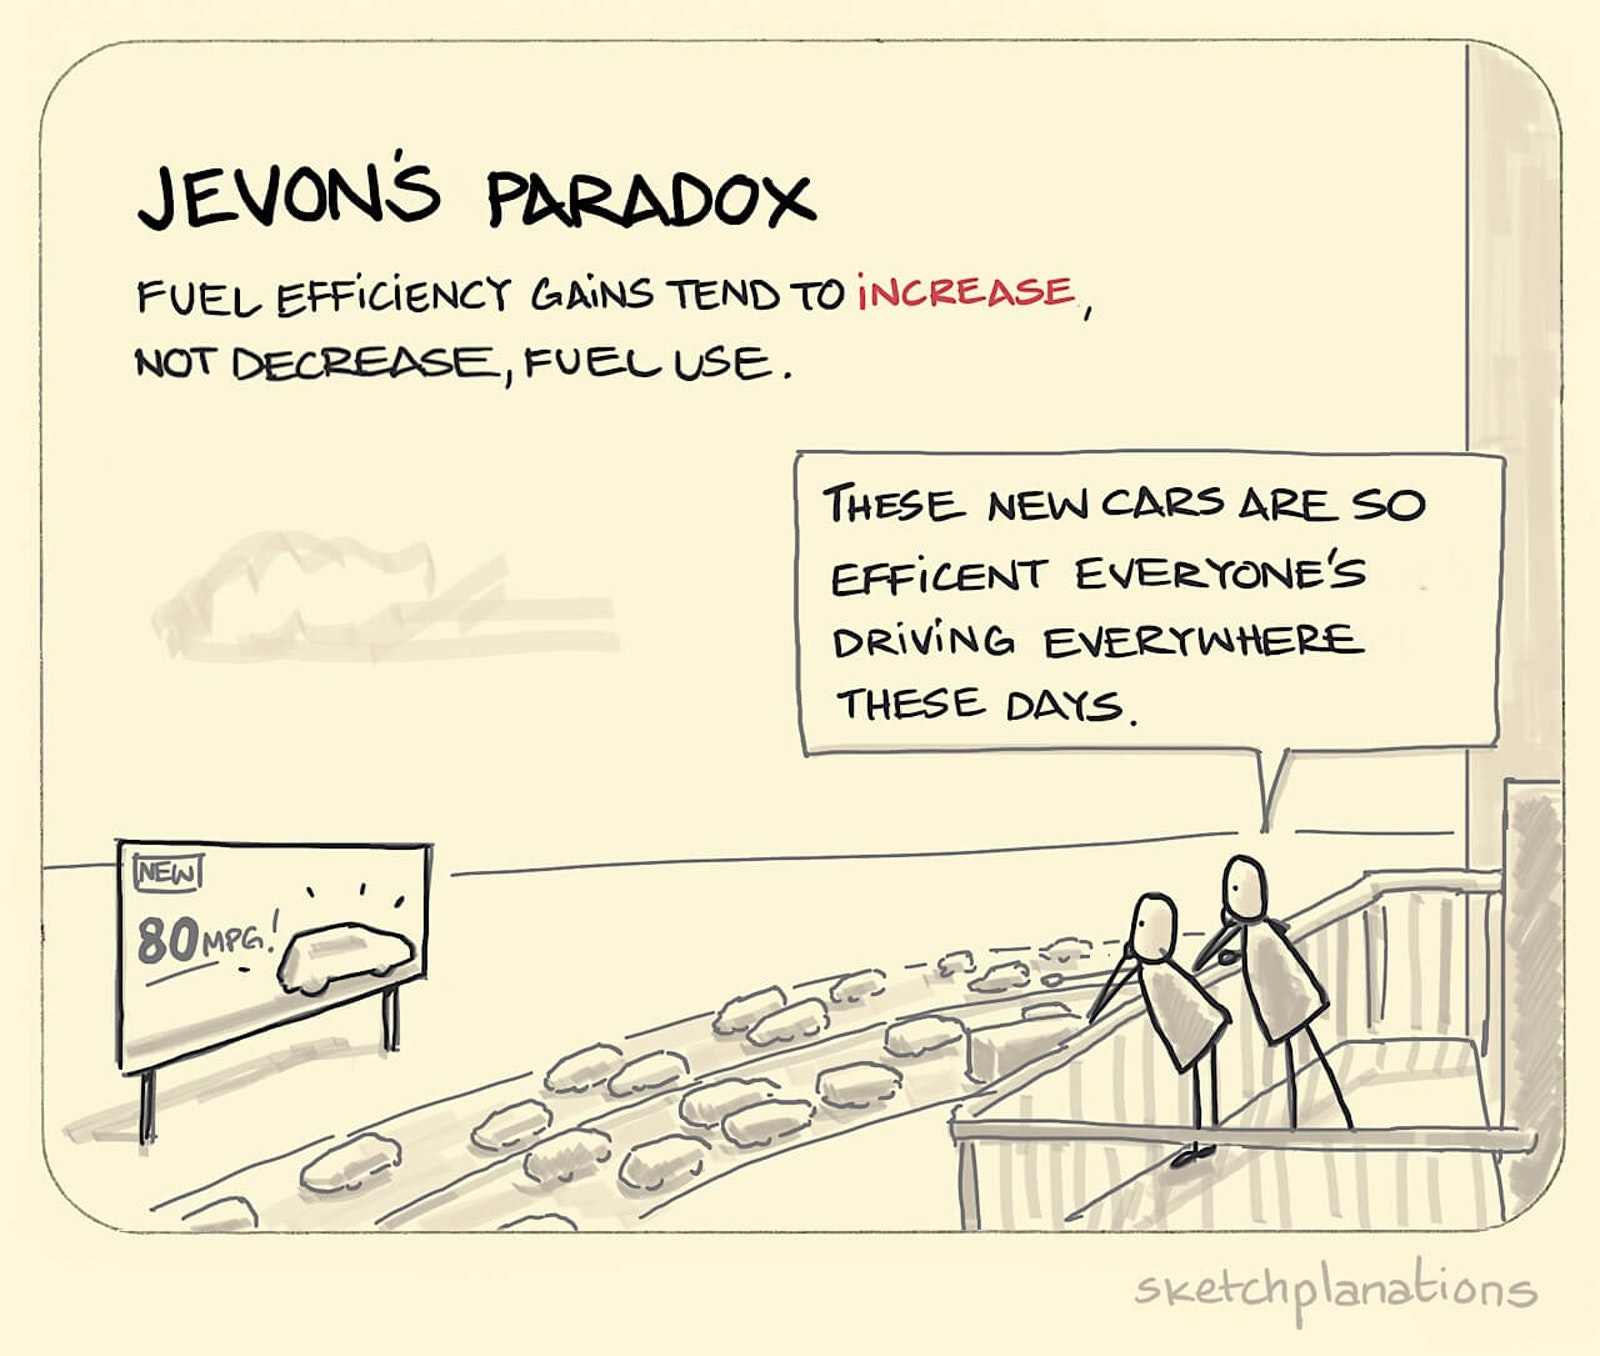 Ce este paradoxul Jevons